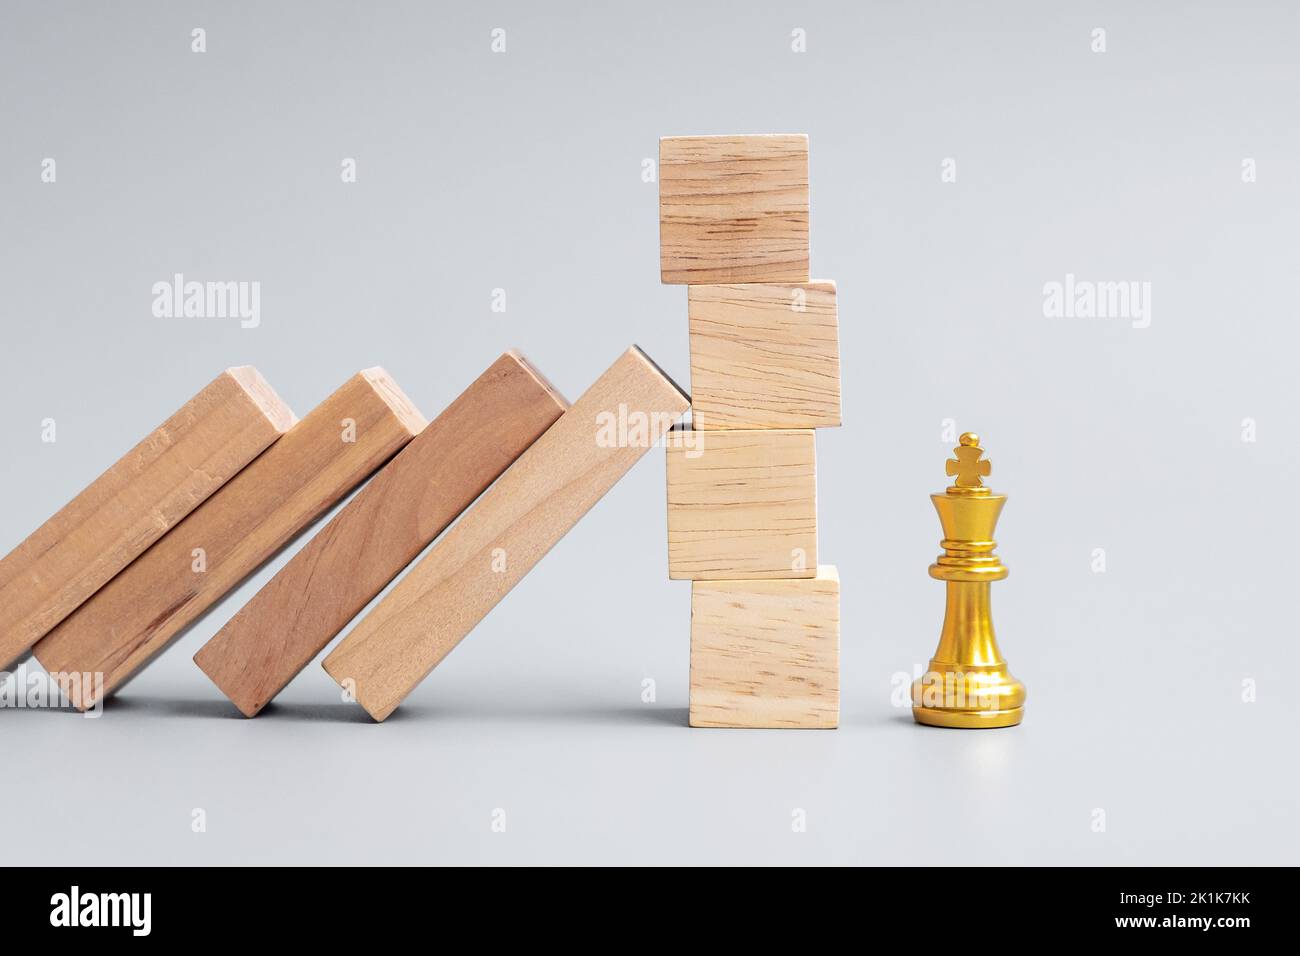 Bloques de madera o dominó cayendo a la figura de rey de ajedrez dorado. Negocio, Gestión de riesgos, Solución, Regresión económica, Seguros Foto de stock